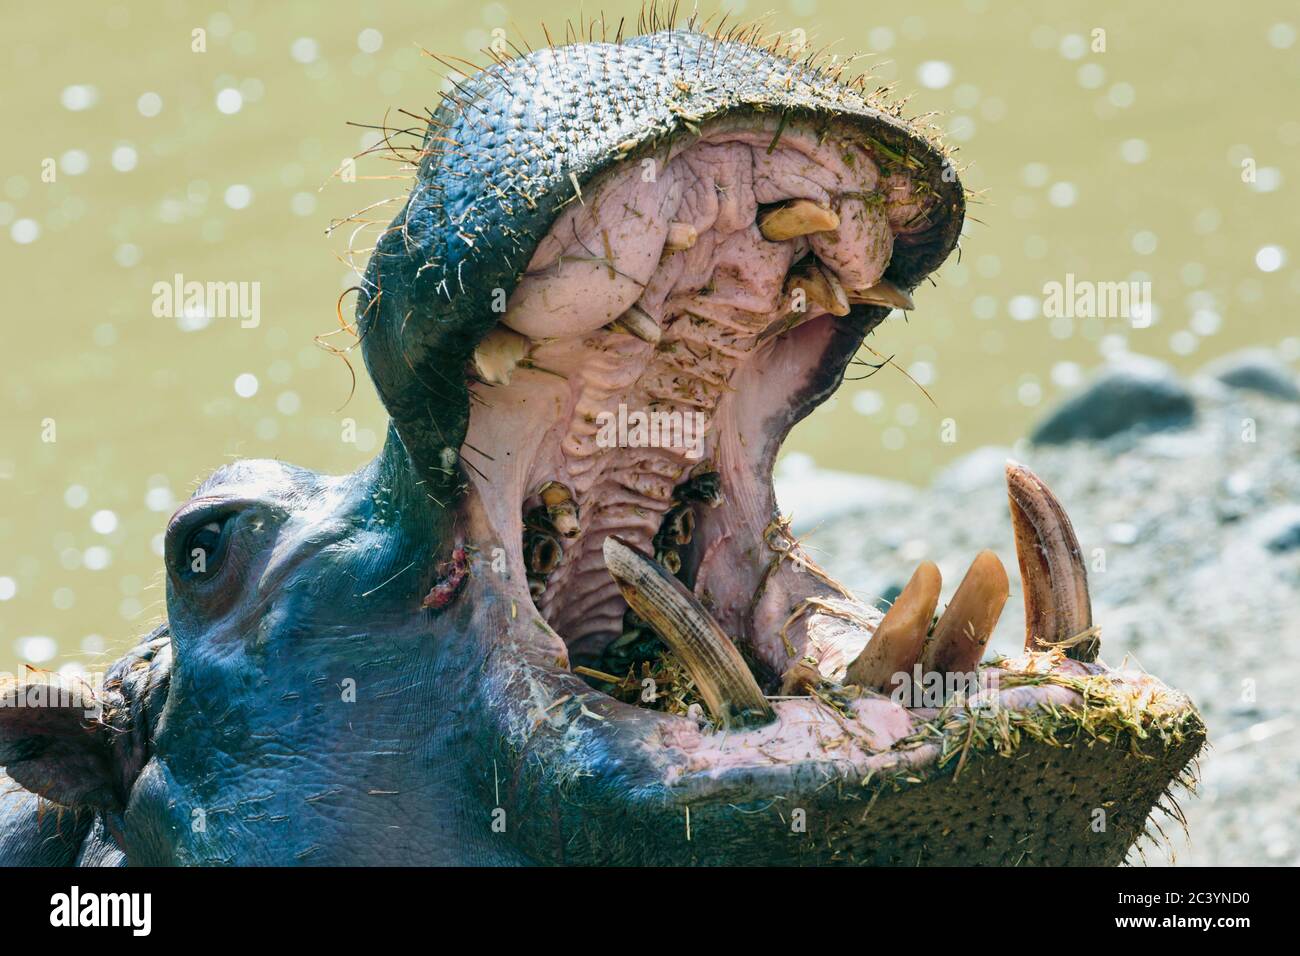 Nilpferd (Hippopotamus amphibius) mit offenem Mund. Fotografiert in Gefangenschaft. Stockfoto